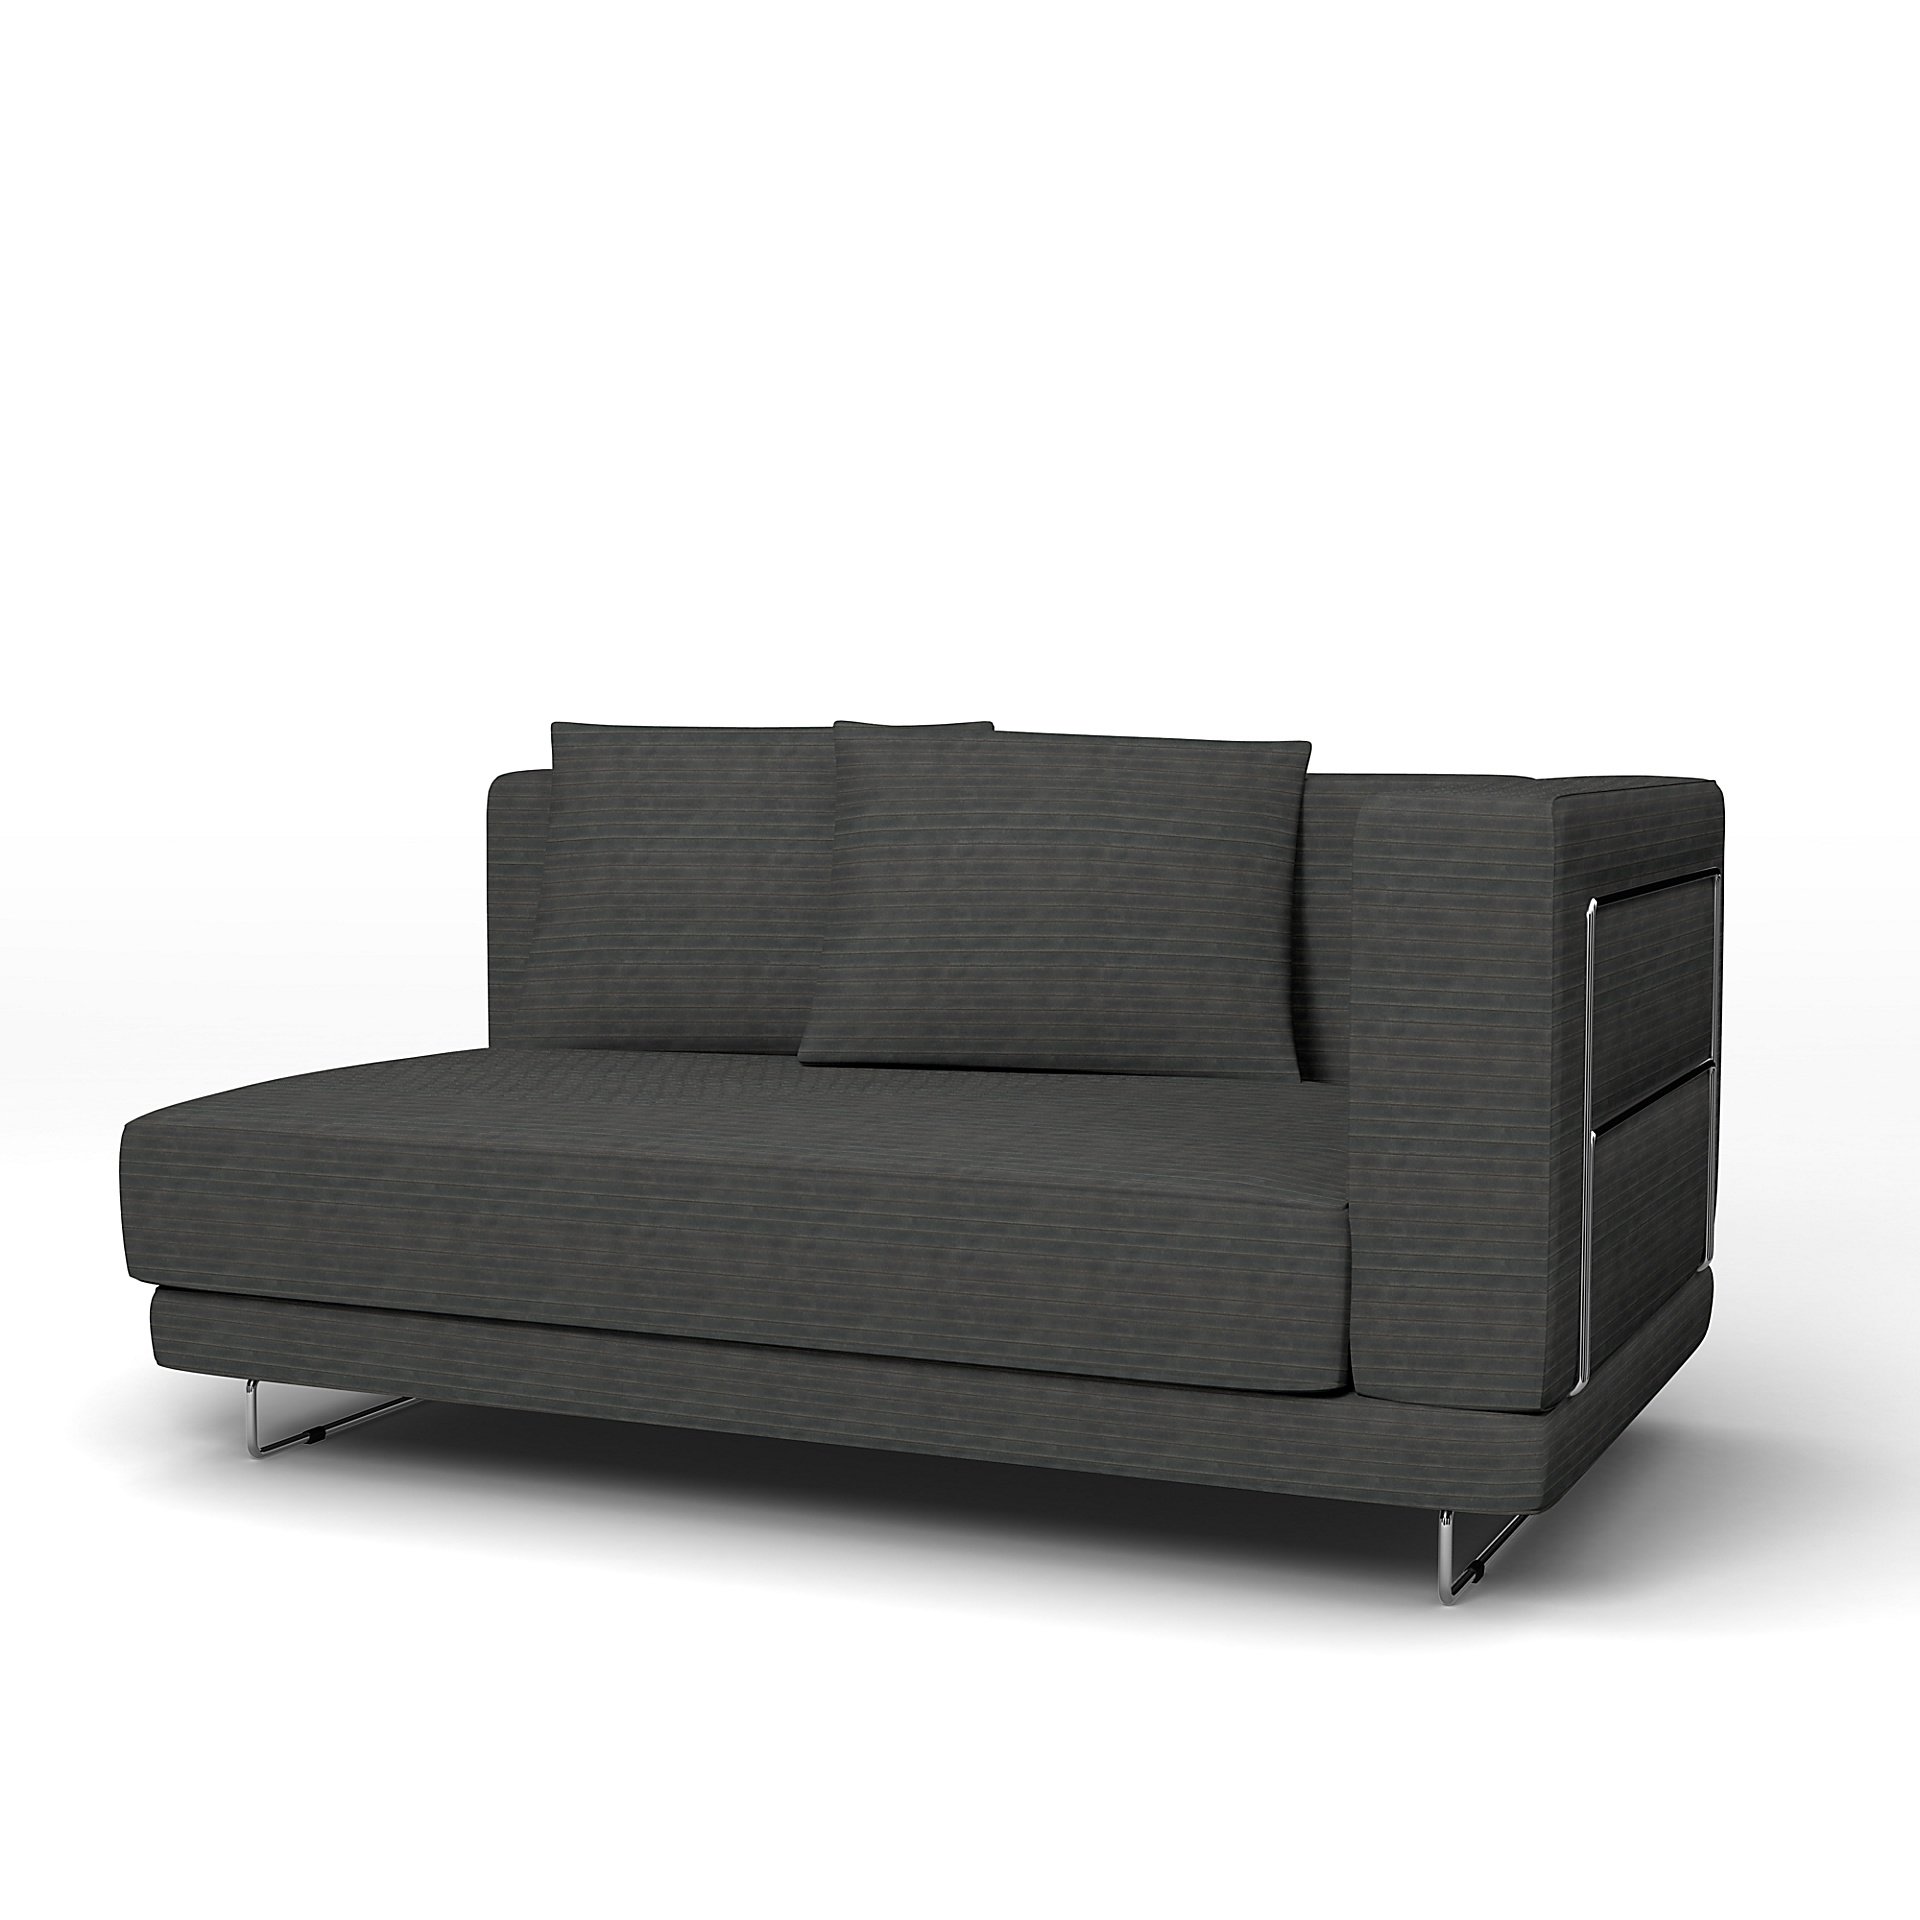 IKEA - Tylosand Sofa with Armrest Cover, Licorice, Corduroy - Bemz